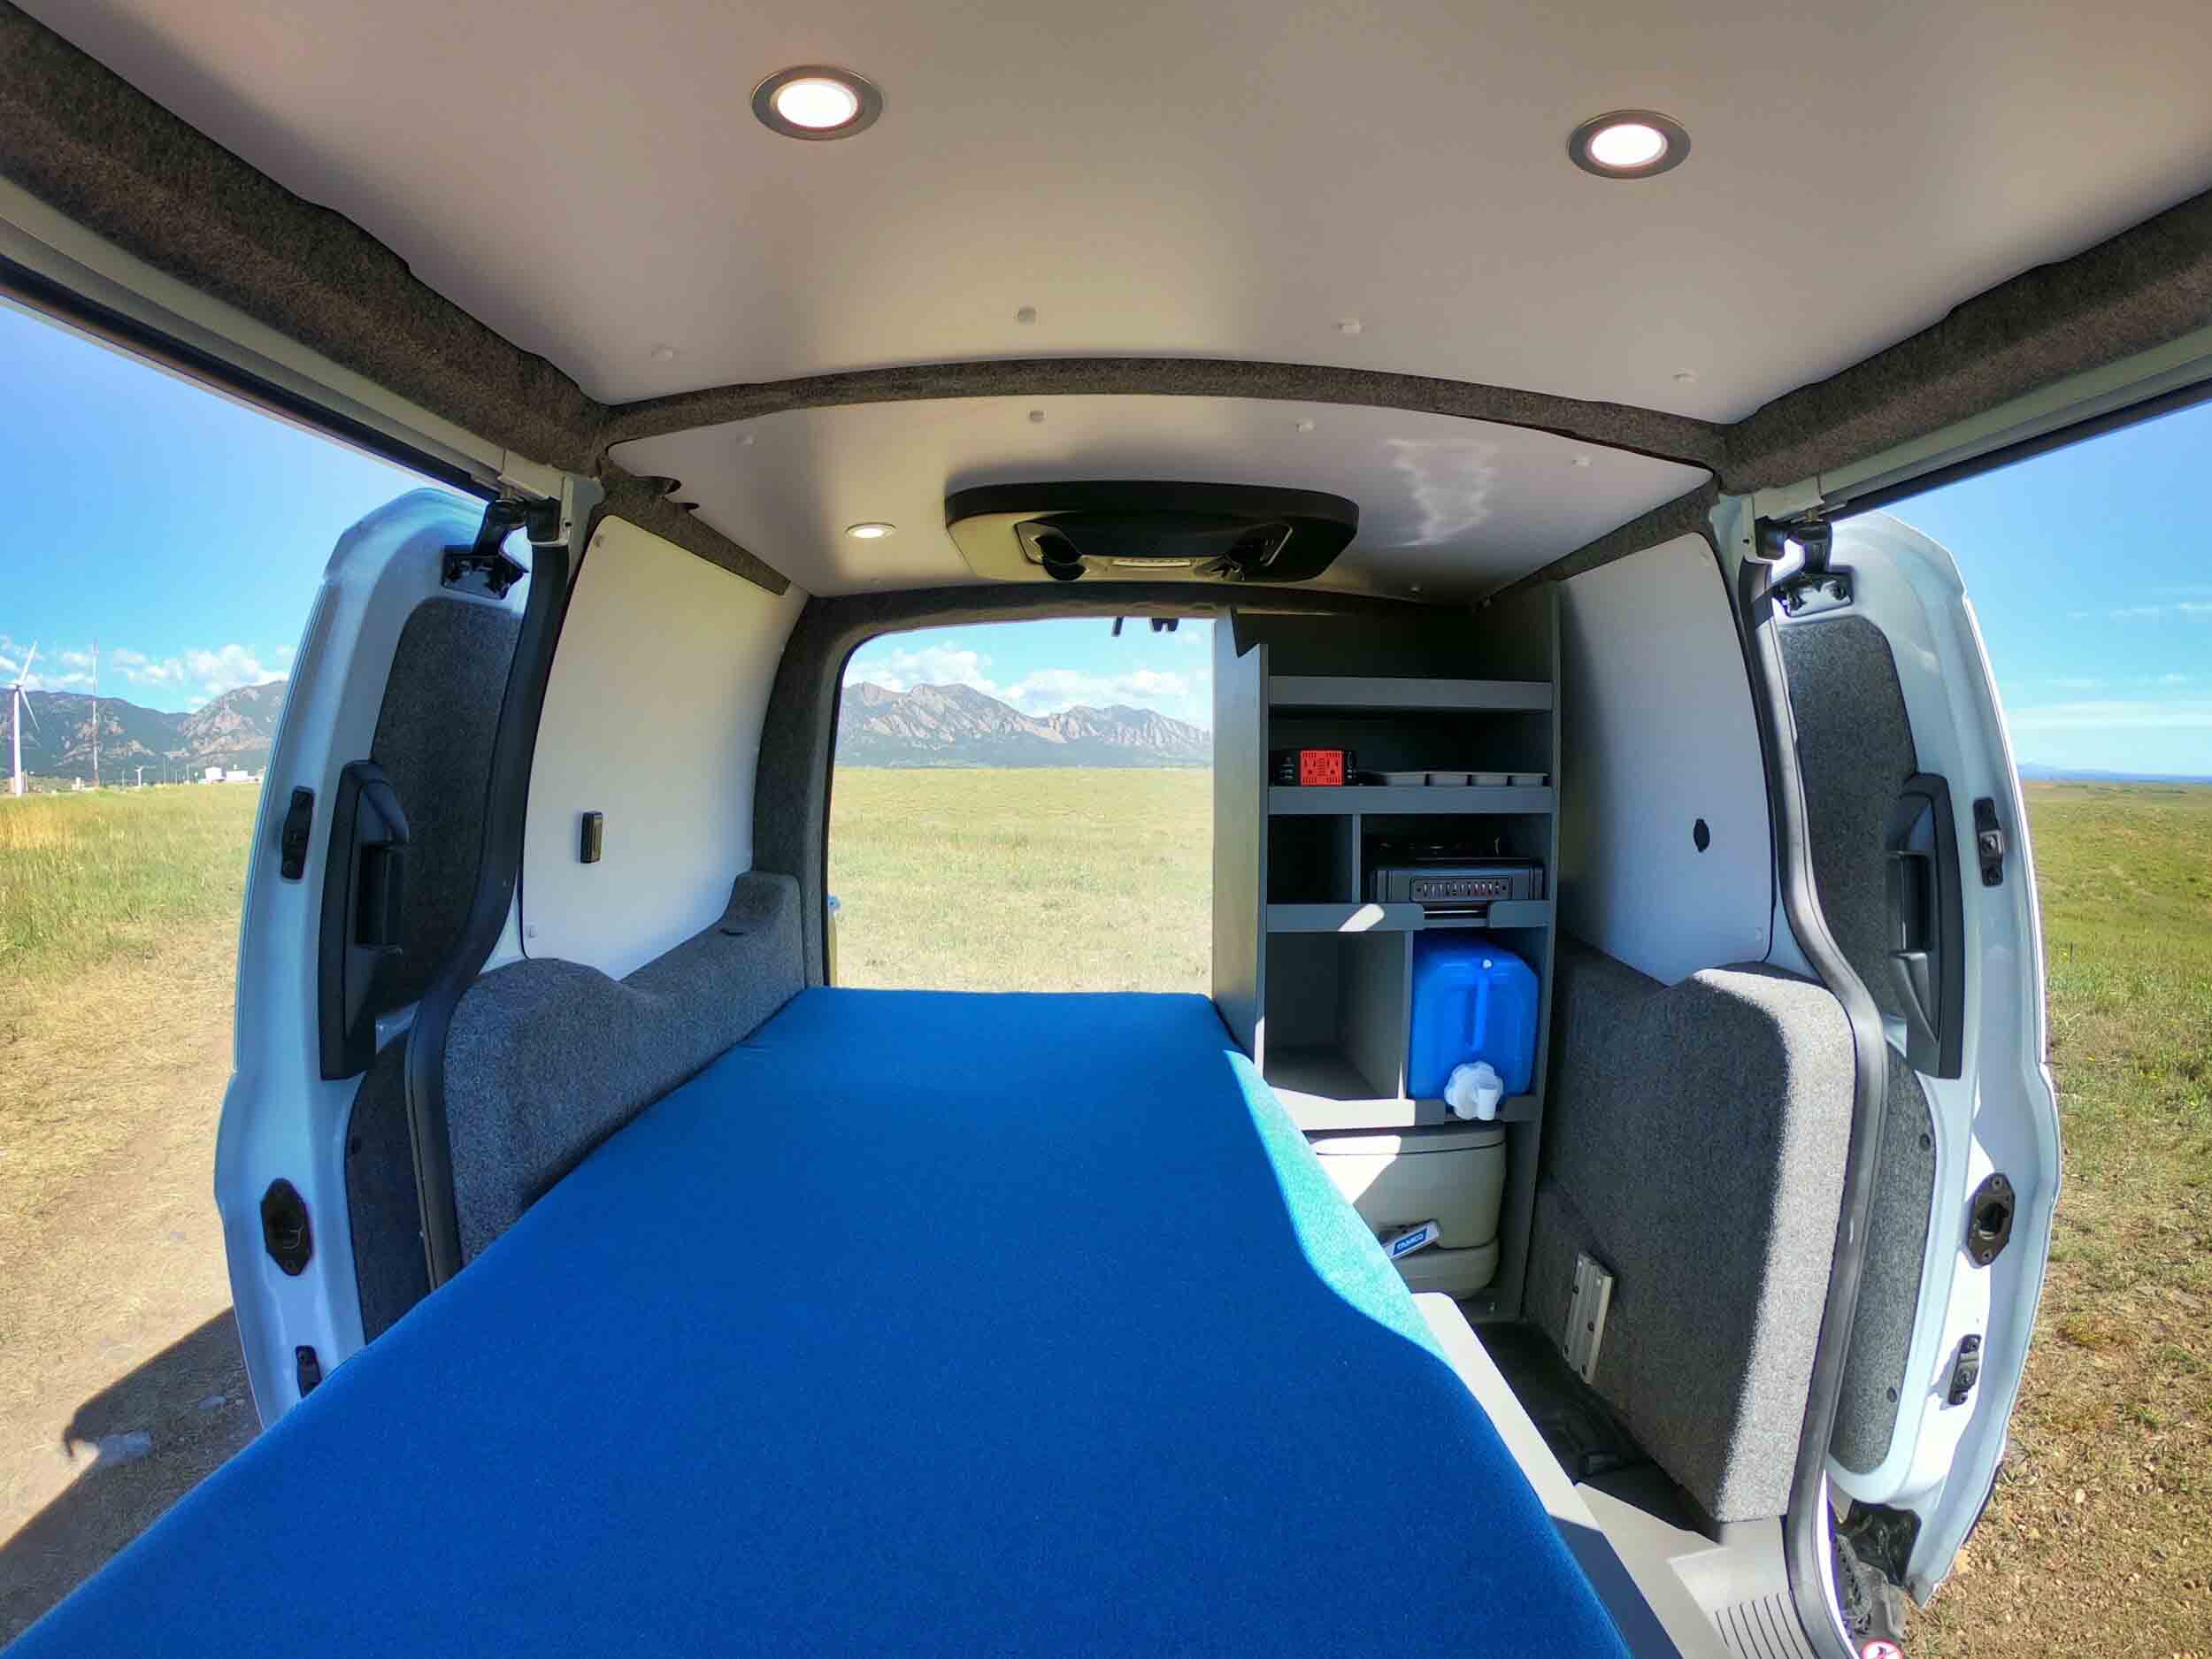 Ford Transit Connect Camper Van Conversion - Contravans